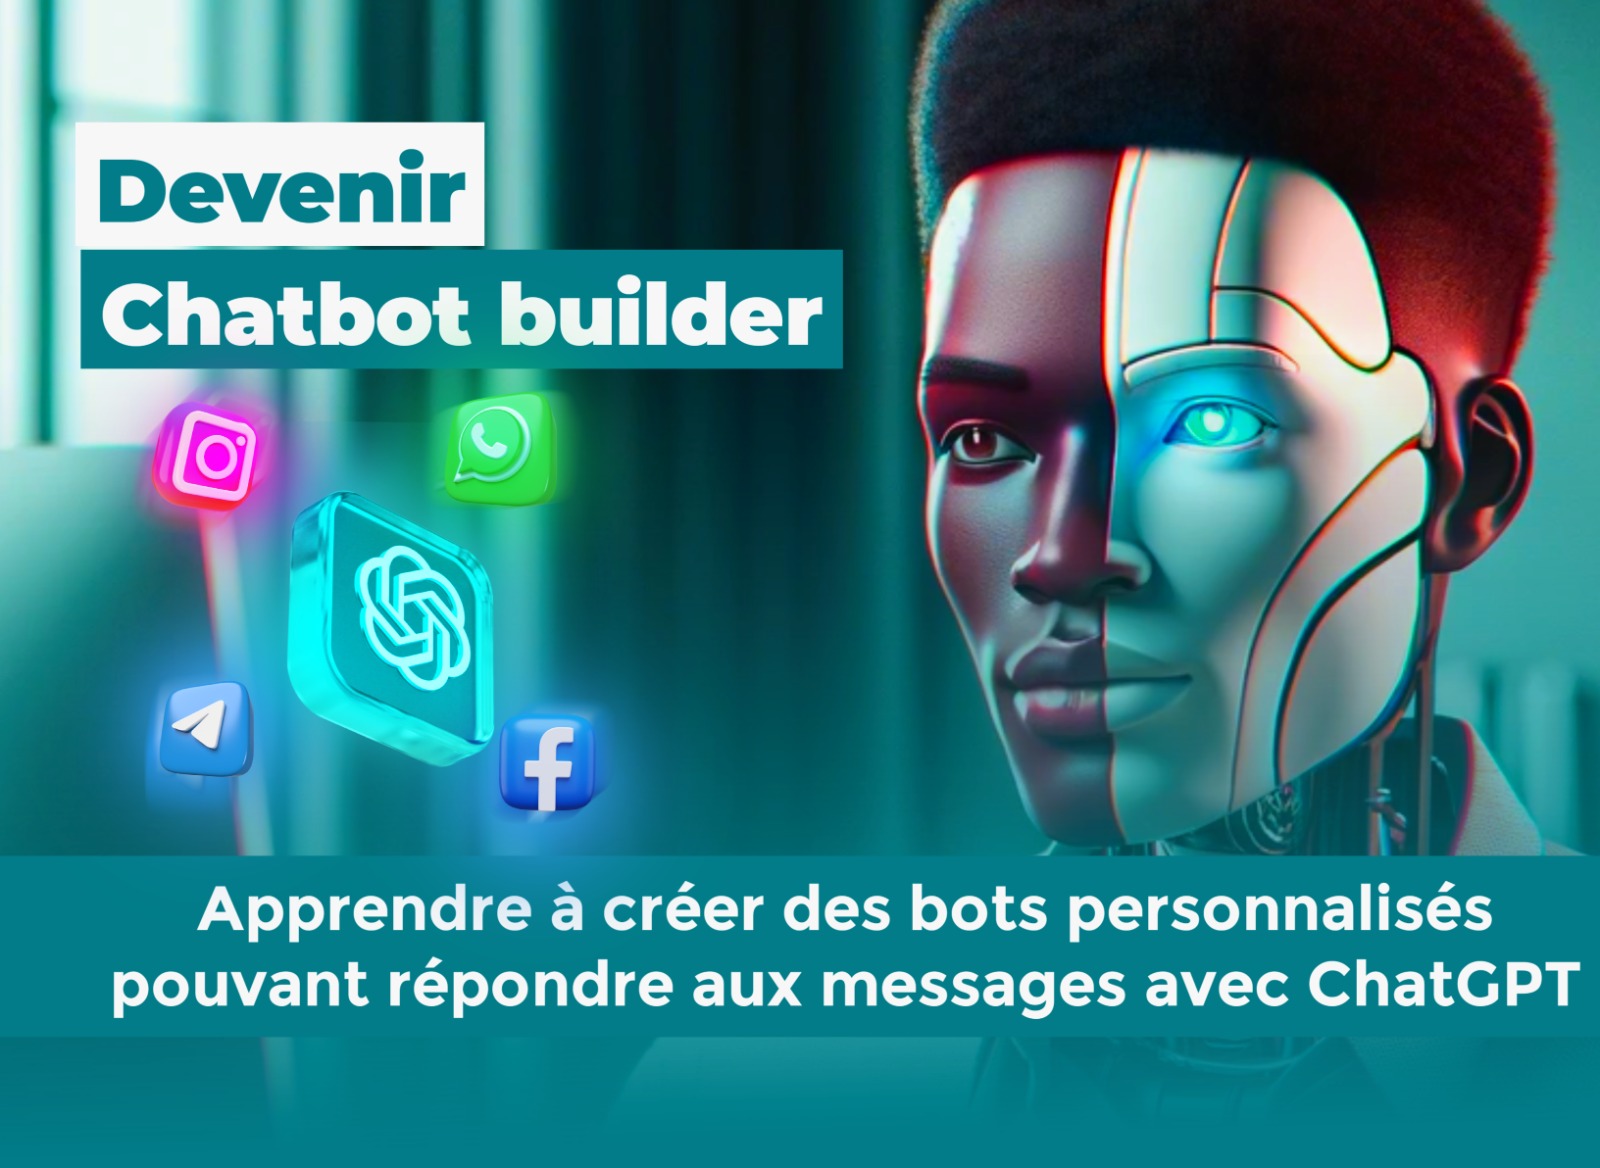 Devenir Chatbot builder: Maîtrisez la création de Bots personnalisés avec l’intelligence artificielle ChatGPT